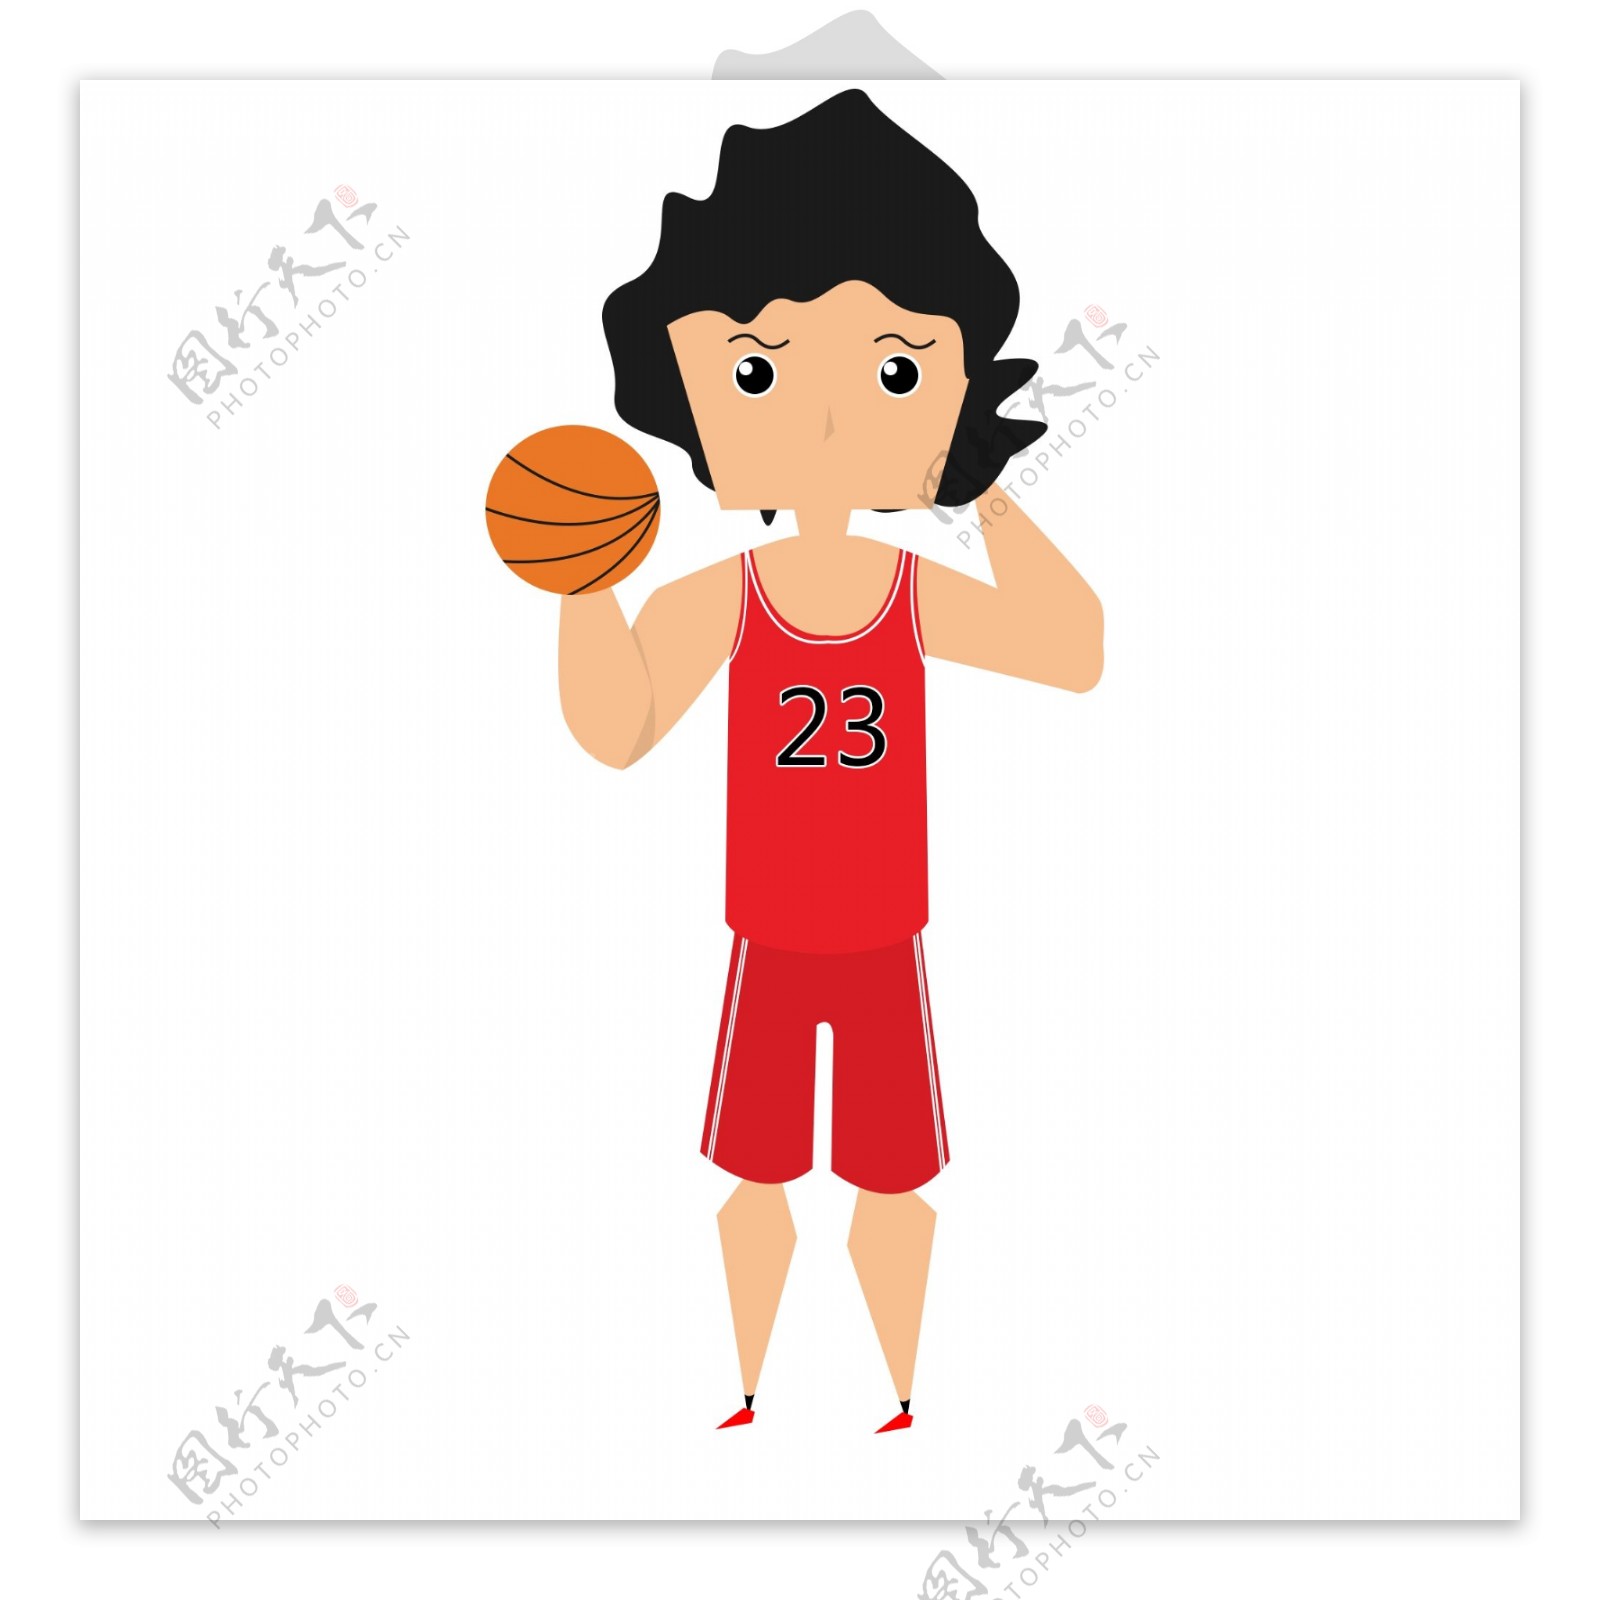 人物运动之红色运动服篮球23号可爱卡通风